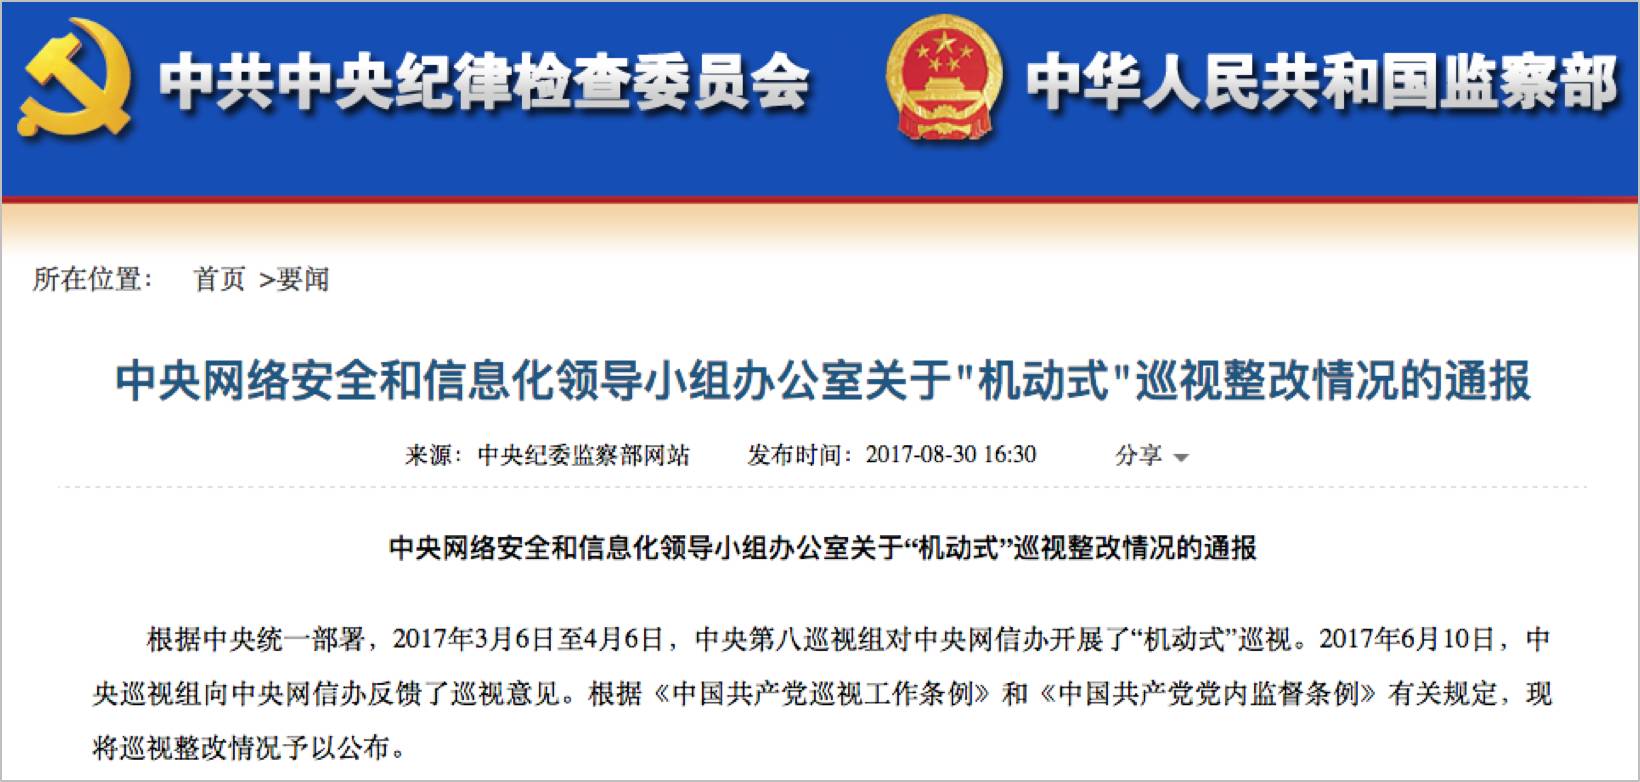 中网联喜获中央网信办“两优一先”表彰-中国网络社会组织联合会